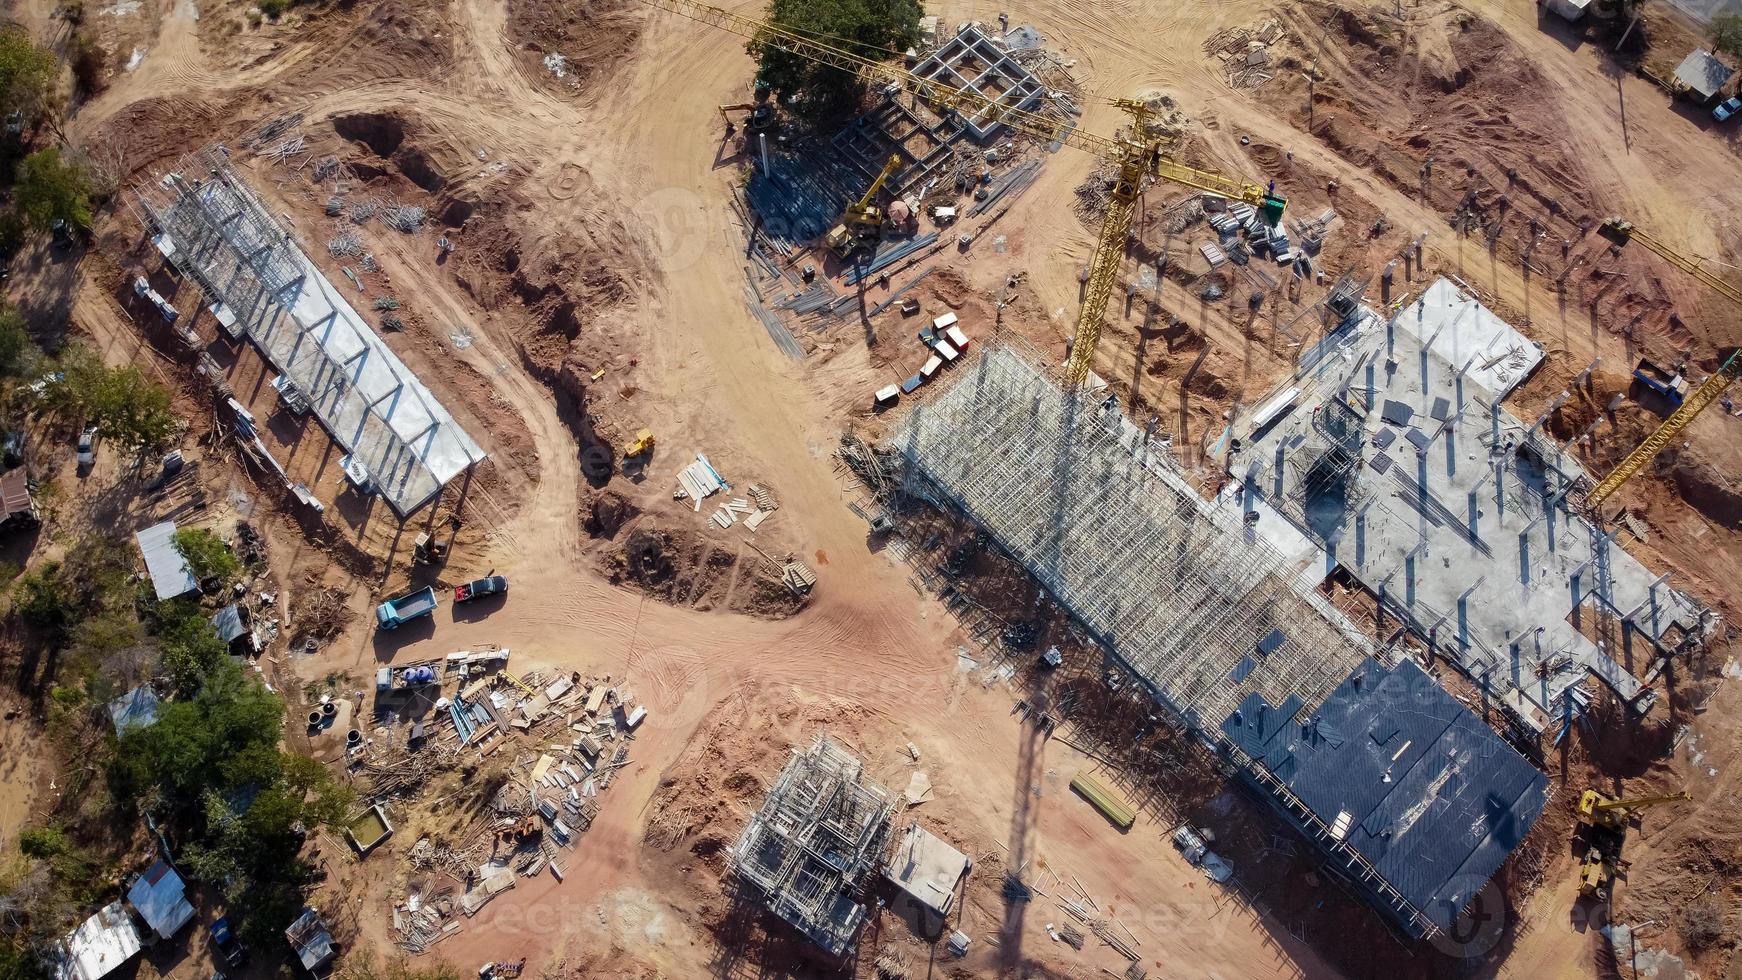 vista aerea el proyecto es la construccion de un gran edificio. grúa de construcción amarilla y trabajadores están trabajando, fotos de drones